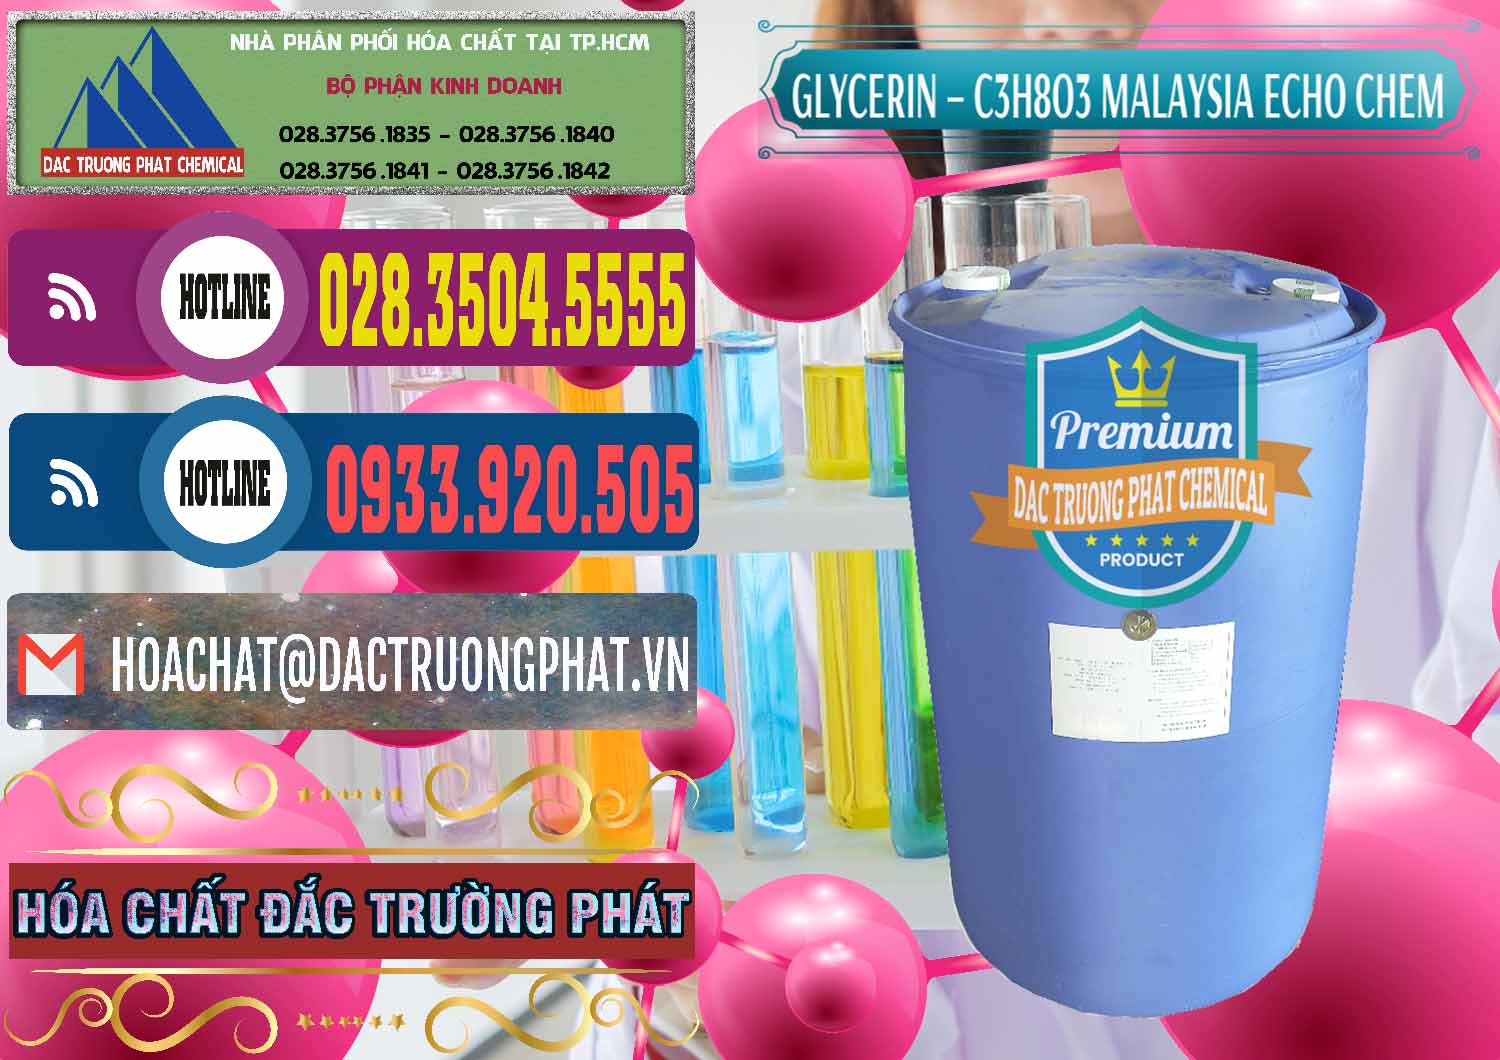 Cty chuyên bán - phân phối C3H8O3 - Glycerin 99.7% Echo Chem Malaysia - 0273 - Chuyên phân phối ( nhập khẩu ) hóa chất tại TP.HCM - muabanhoachat.com.vn